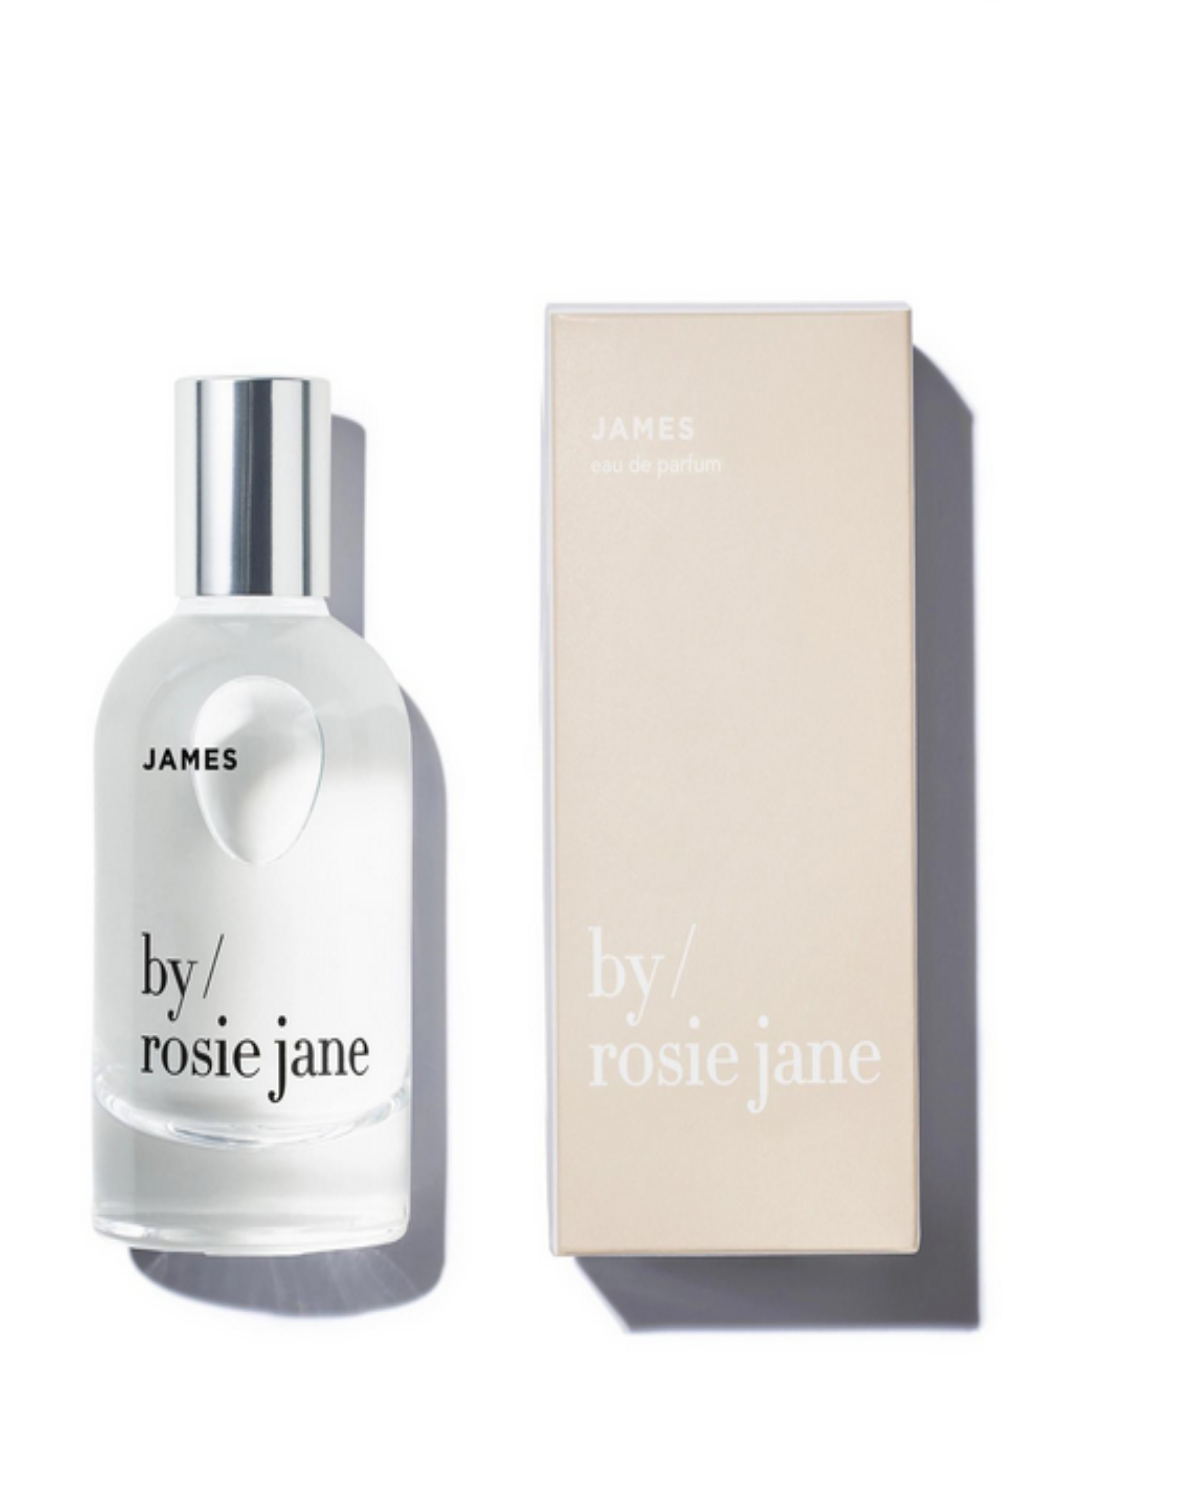 James Eau de Parfum by Rosie Jane